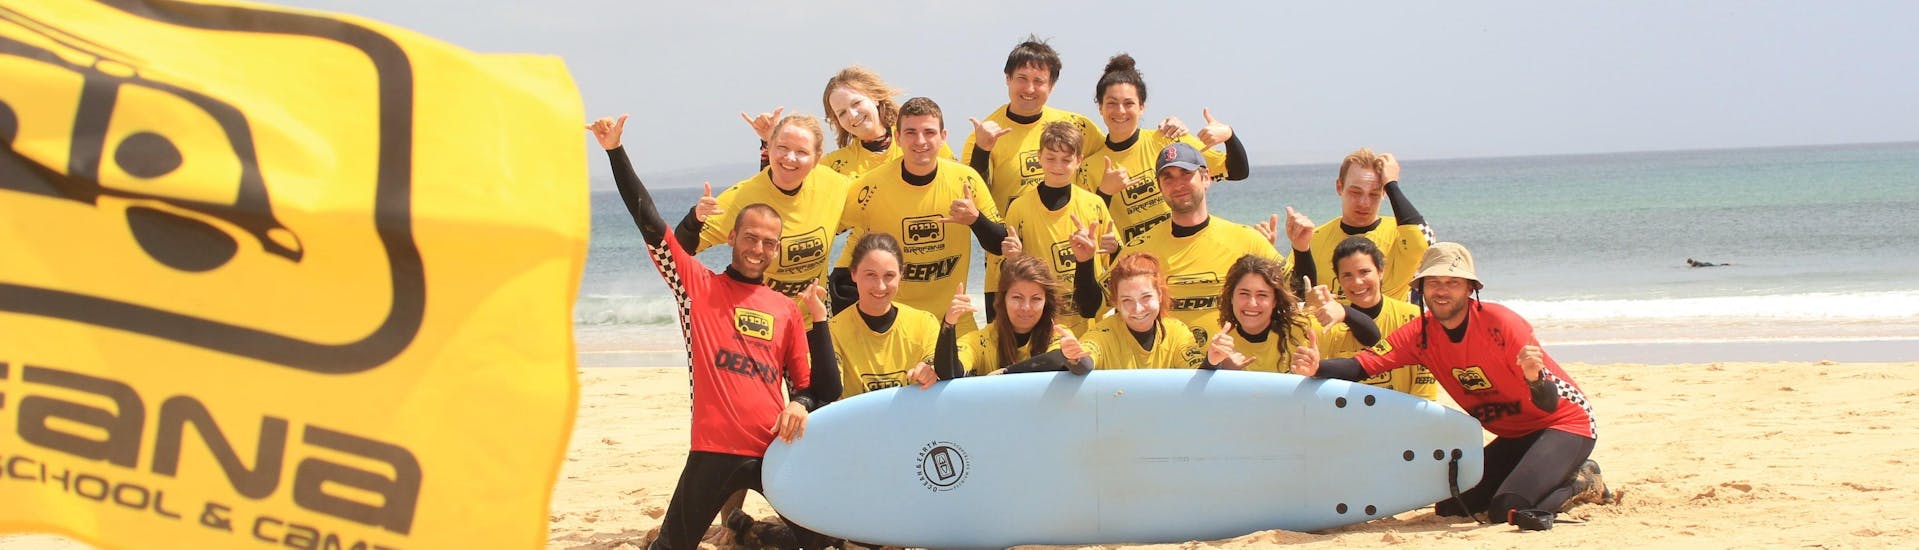 Un groupe de surfeurs heureux posant pour une photo après avoir terminé le cours de surf à Praia da Arrifana organisé par Arrifana Surf School.